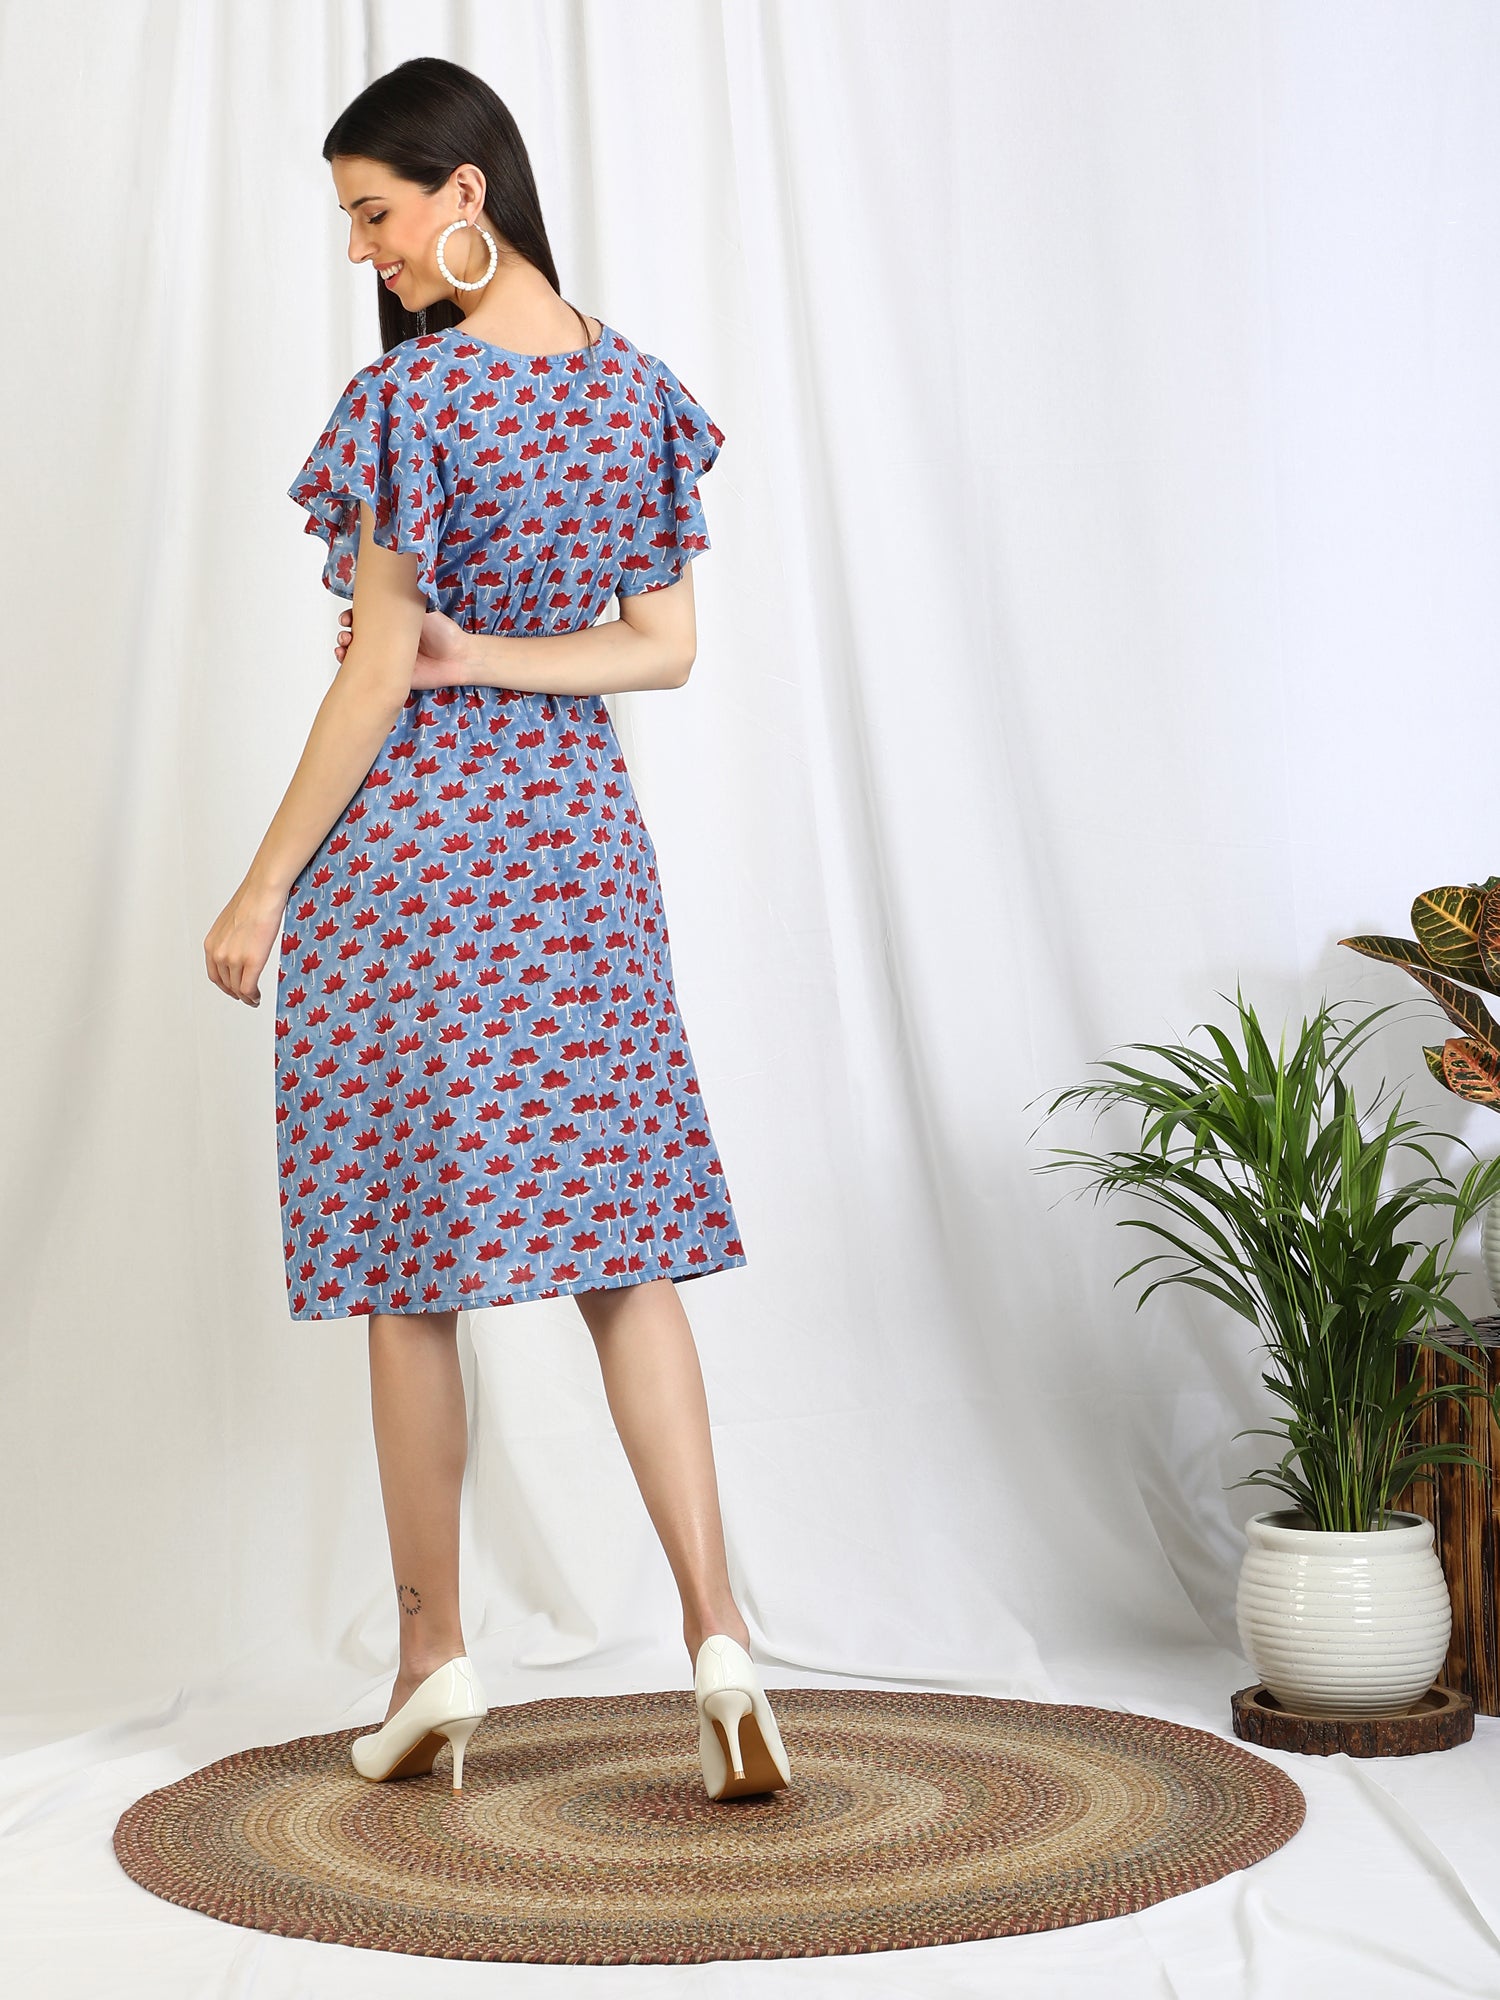 lavender dress for women online india